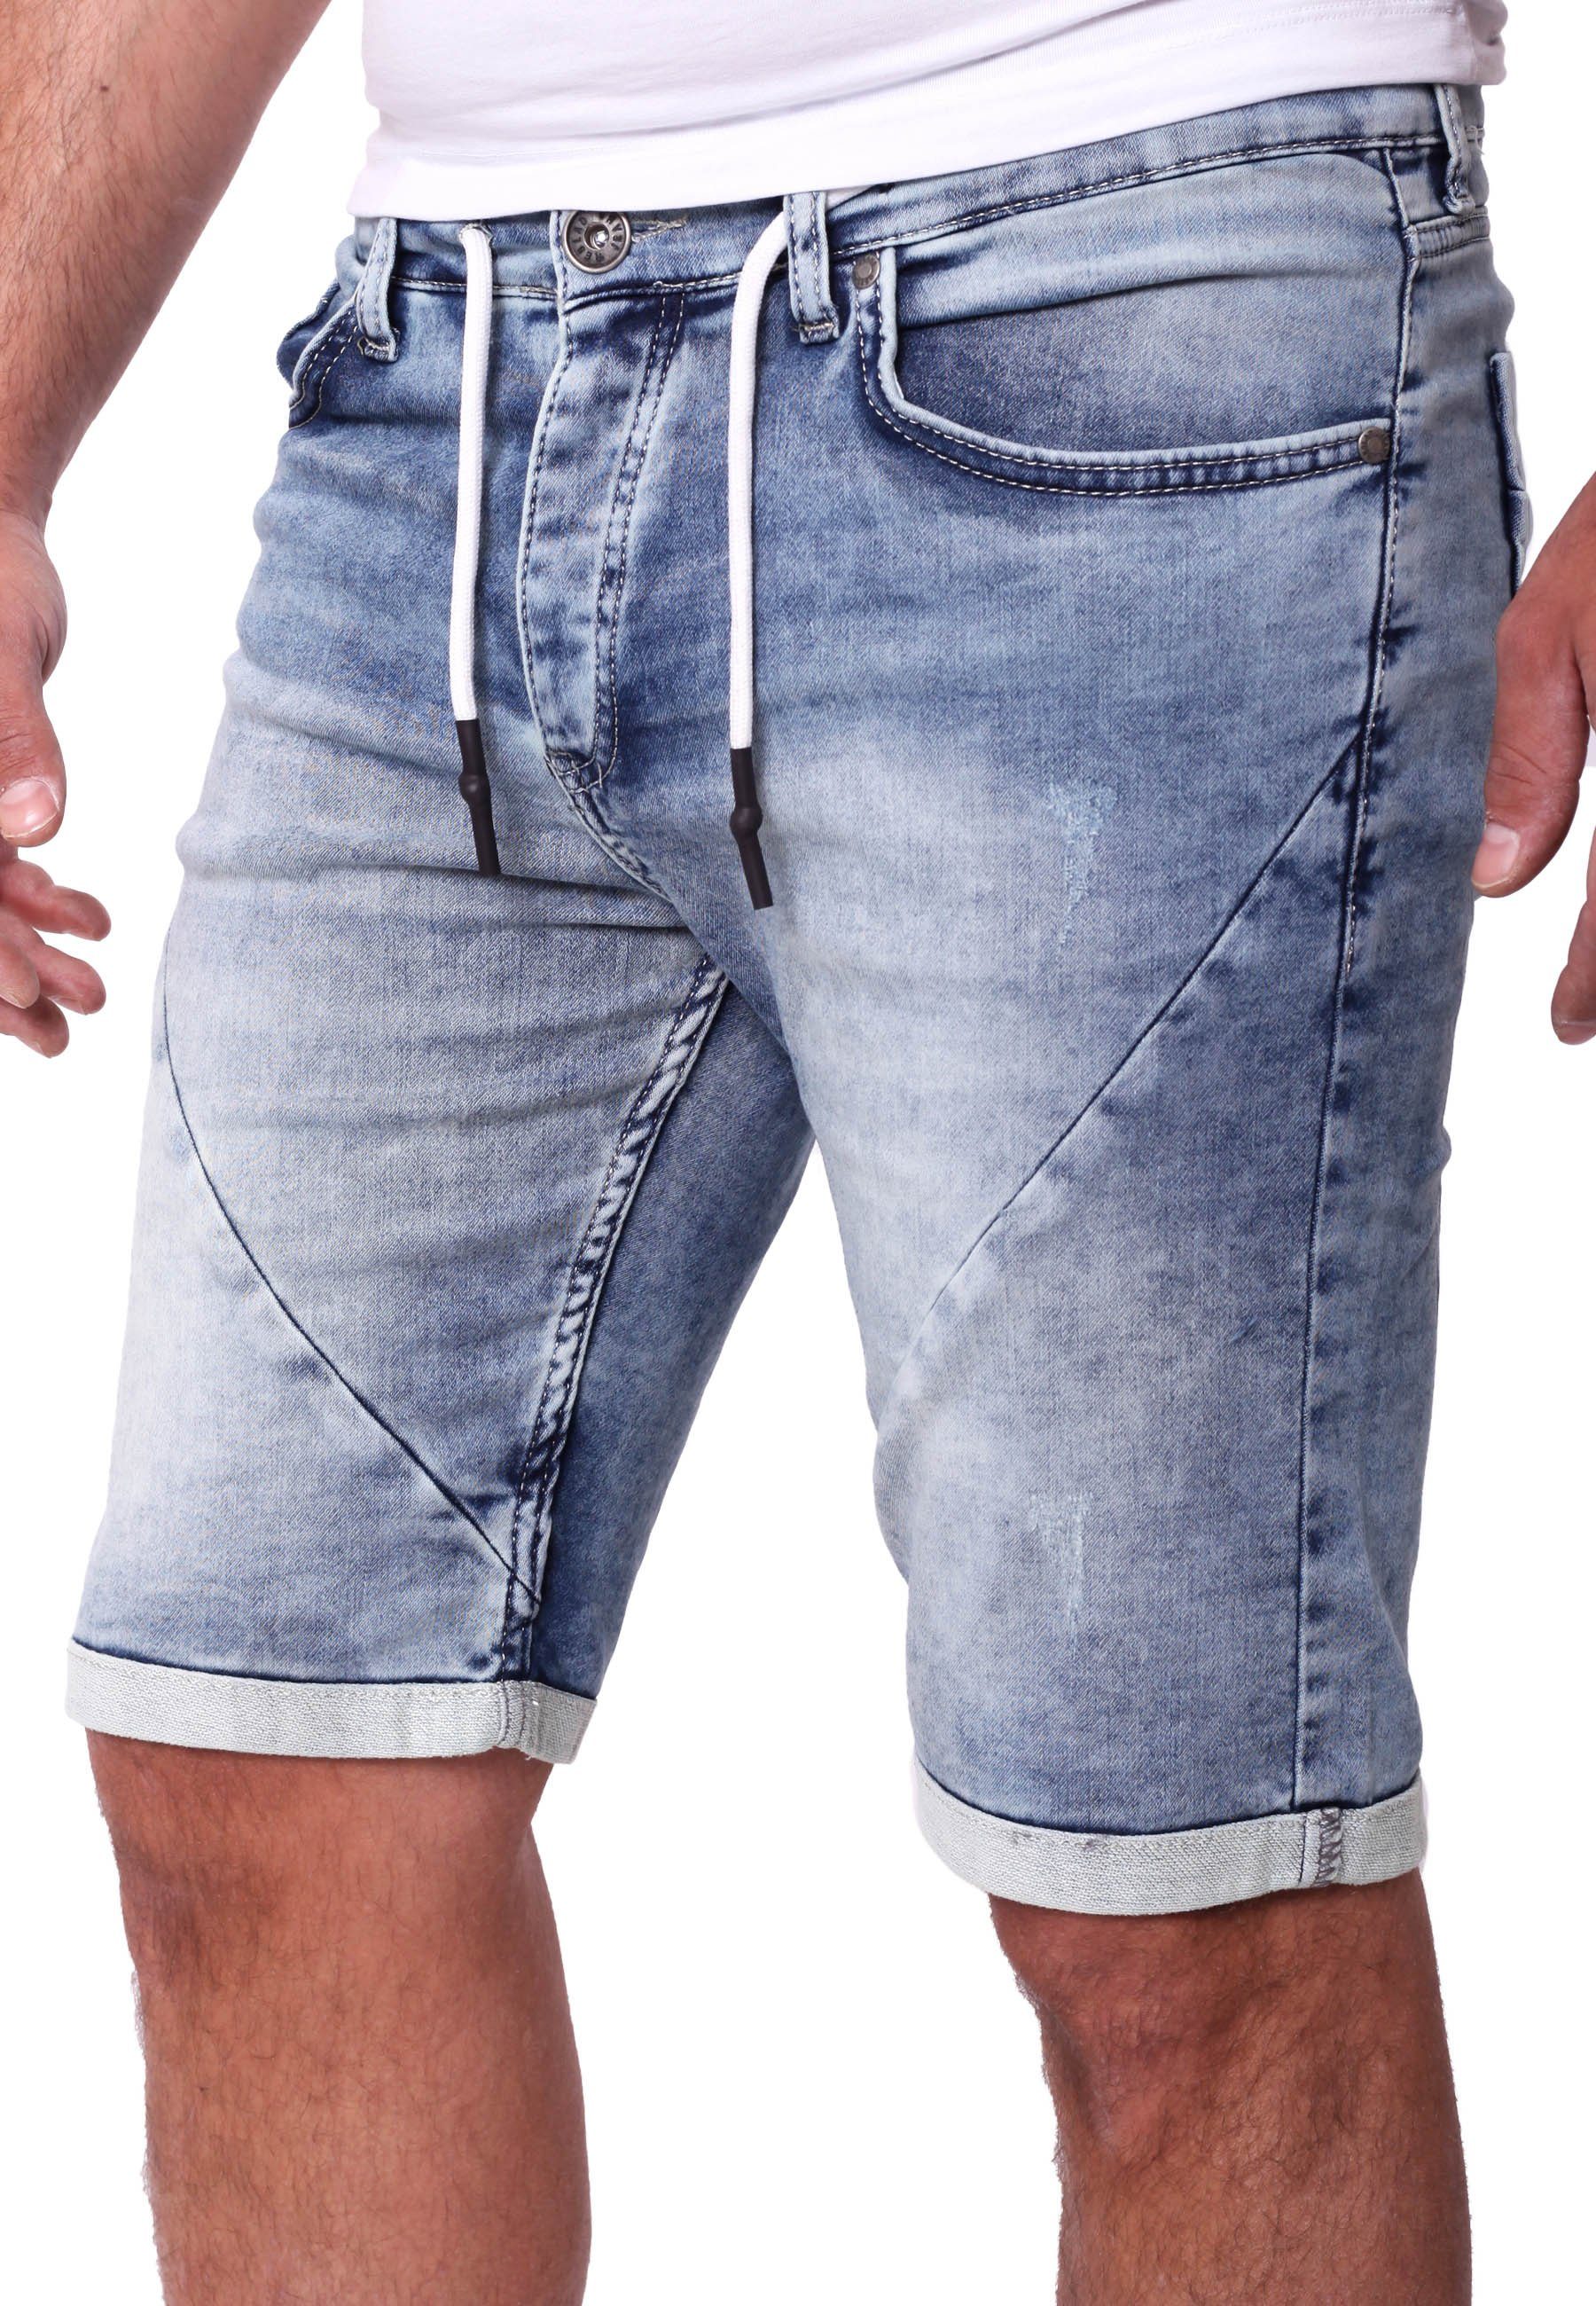 Reslad Jeansshorts Reslad Jeans Shorts Herren Kurze Hosen Sommer -  Sweathose in Jeansopti Jeans-Shorts Sweatjeans Jeansbermudas Stretch Jeans- Hose